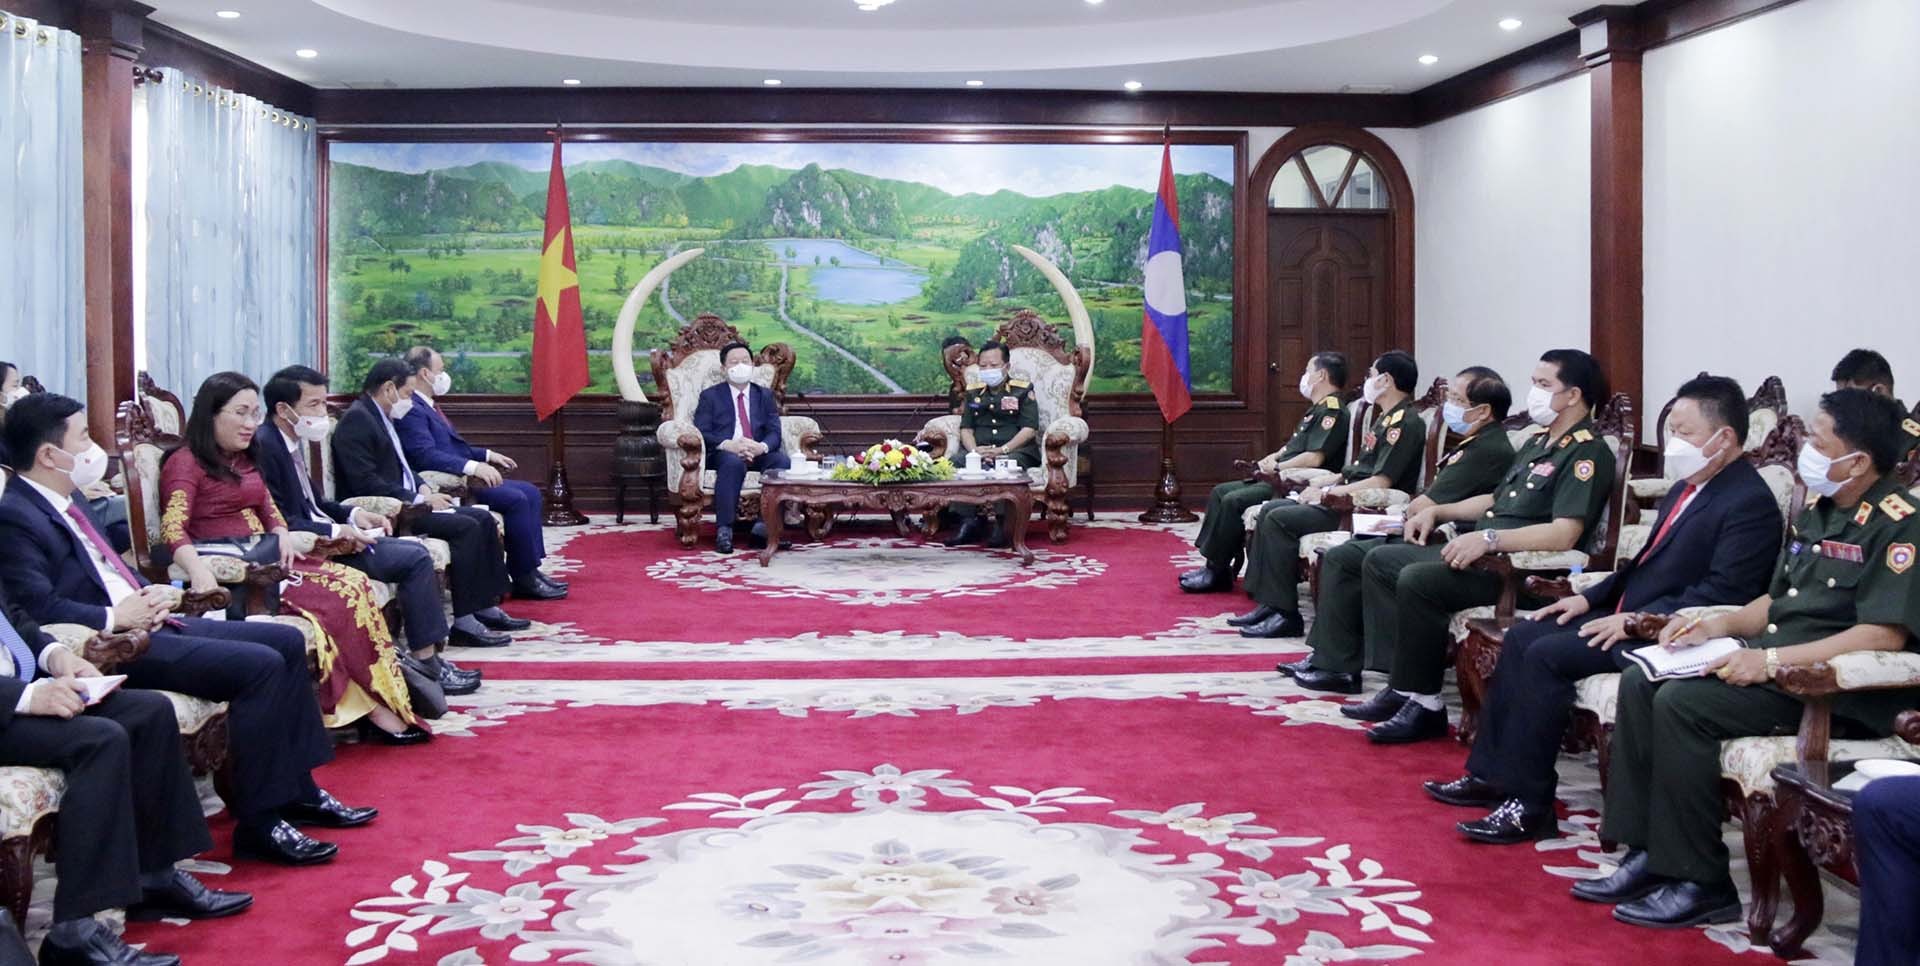 Phó Thủ tướng Chính phủ, Bộ trưởng Bộ Quốc phòng Lào, Đại tướng Chansamone Chanyalath tiếp Bí thư Trung ương Đảng, Trưởng Ban Tuyên giáo Trung ương Nguyễn Trọng Nghĩa. (Nguồn: TTXVN)